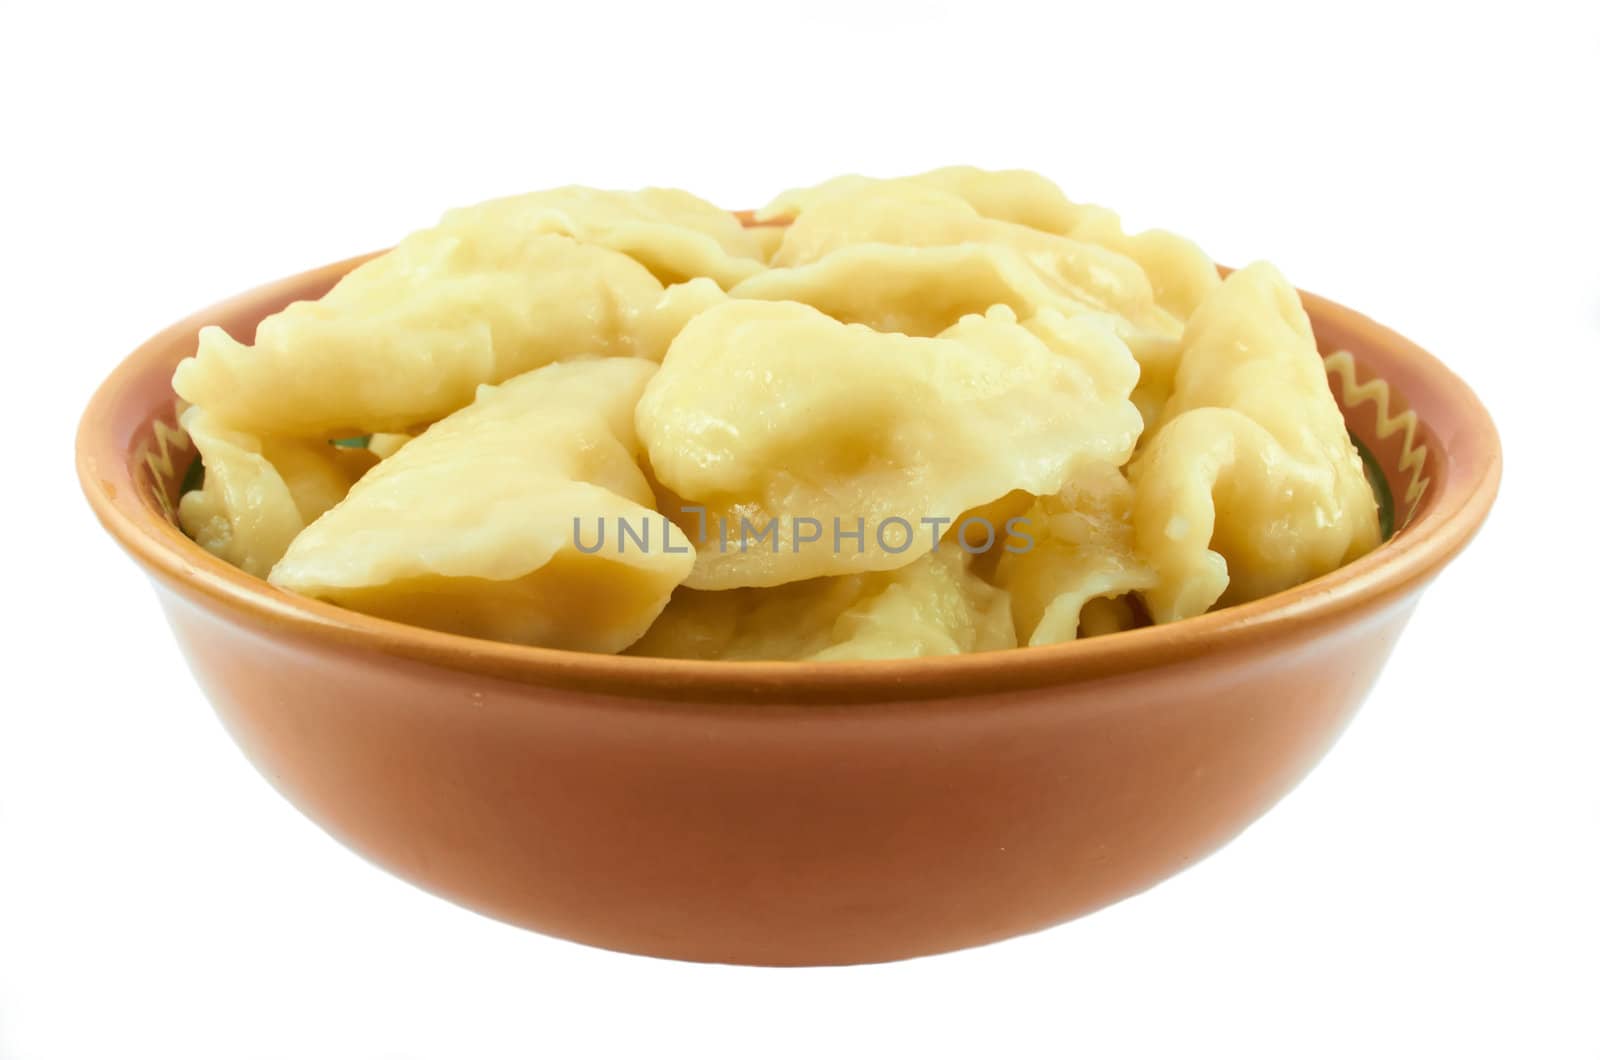 Vareniki with a potato in oil